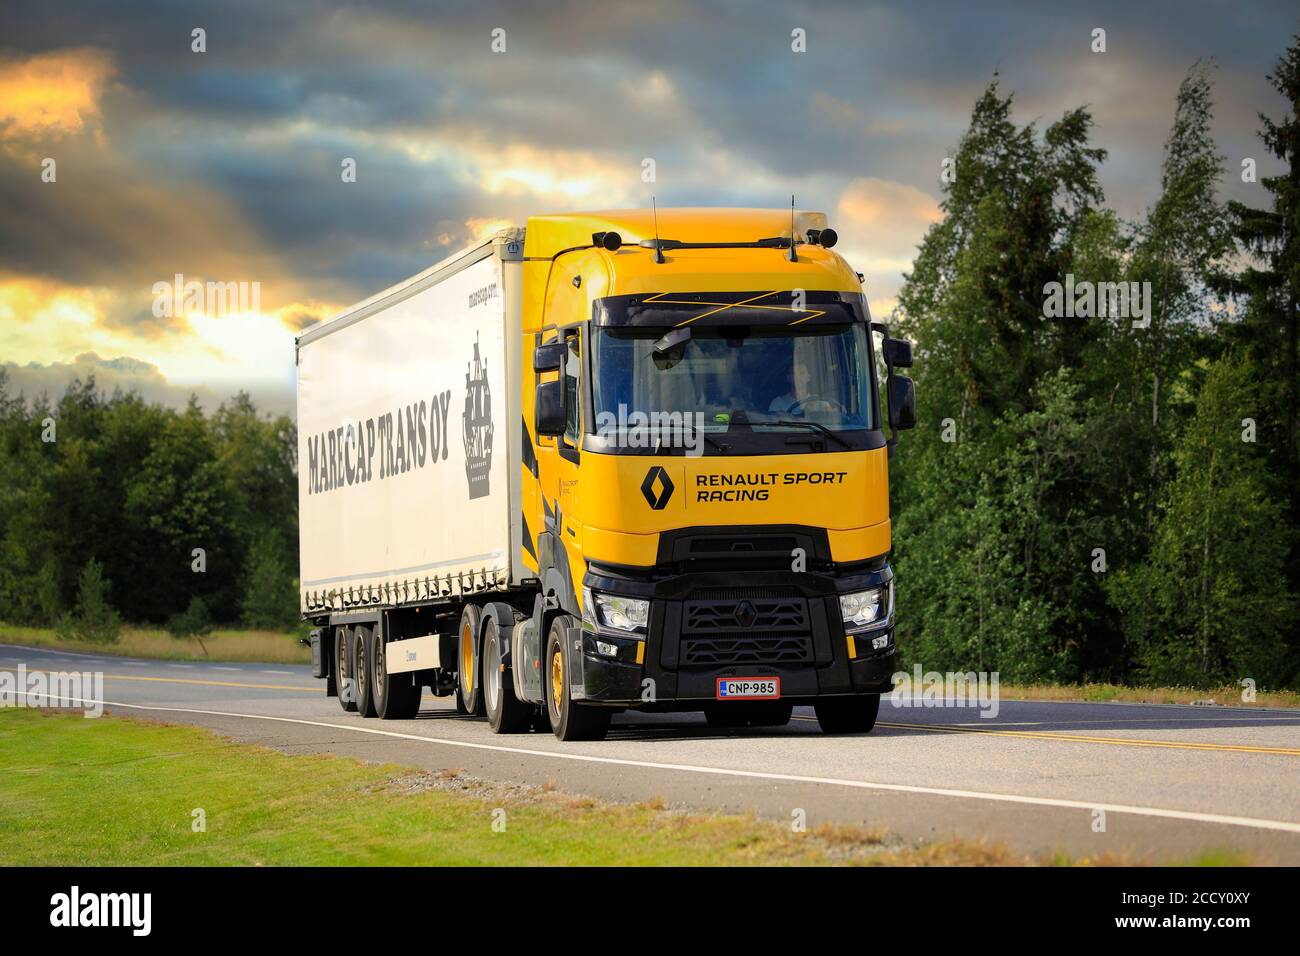 Renault Trucks T High Renault Sport Racing, Sirius jaune, édition limitée de 100 véhicules, dont 10 en Finlande. Forssa, Finlande. 21 août 20. Banque D'Images